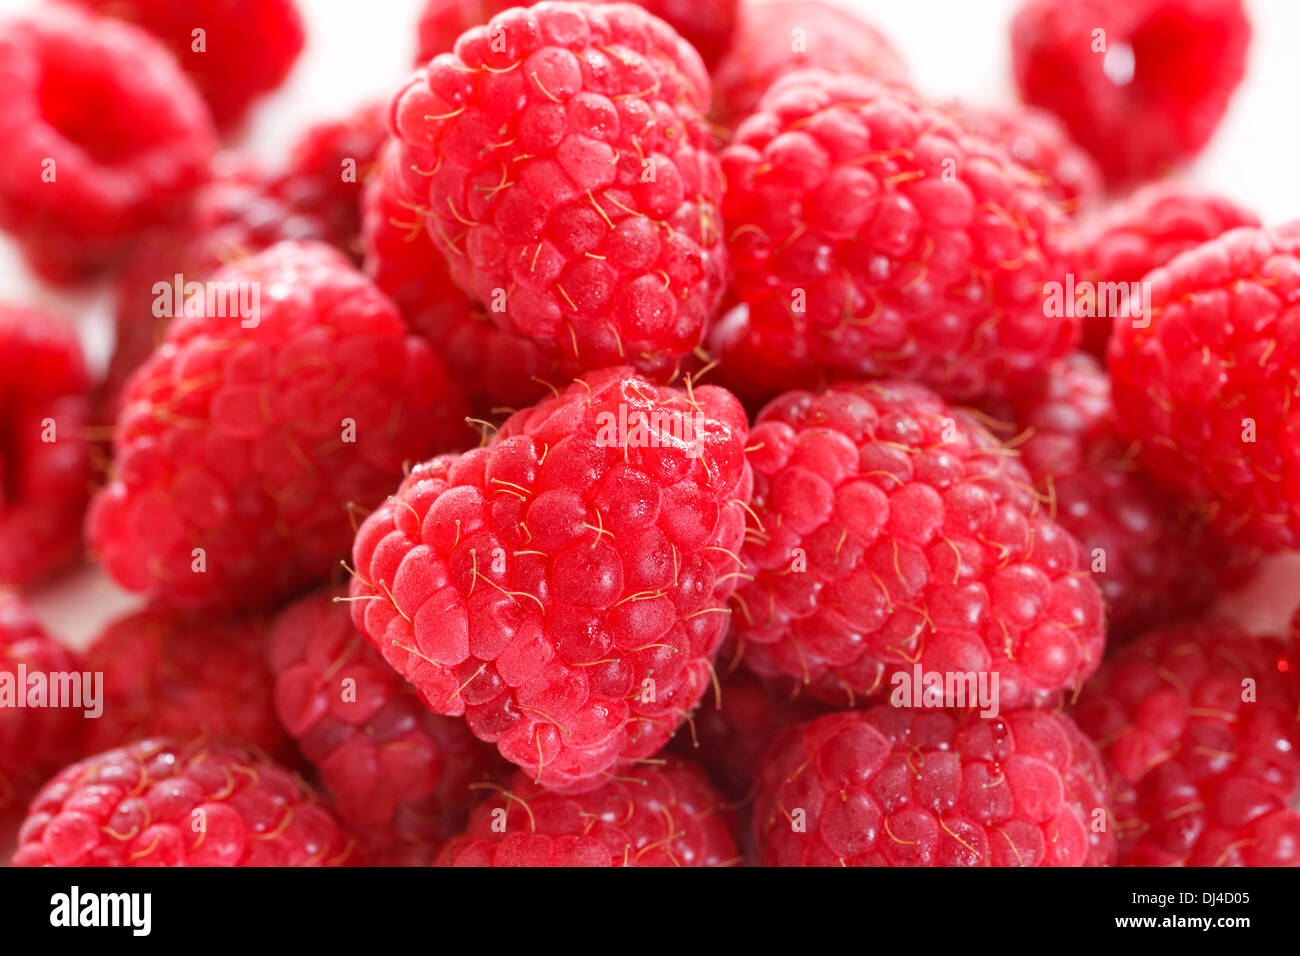 Raspberry pile Stock Photo